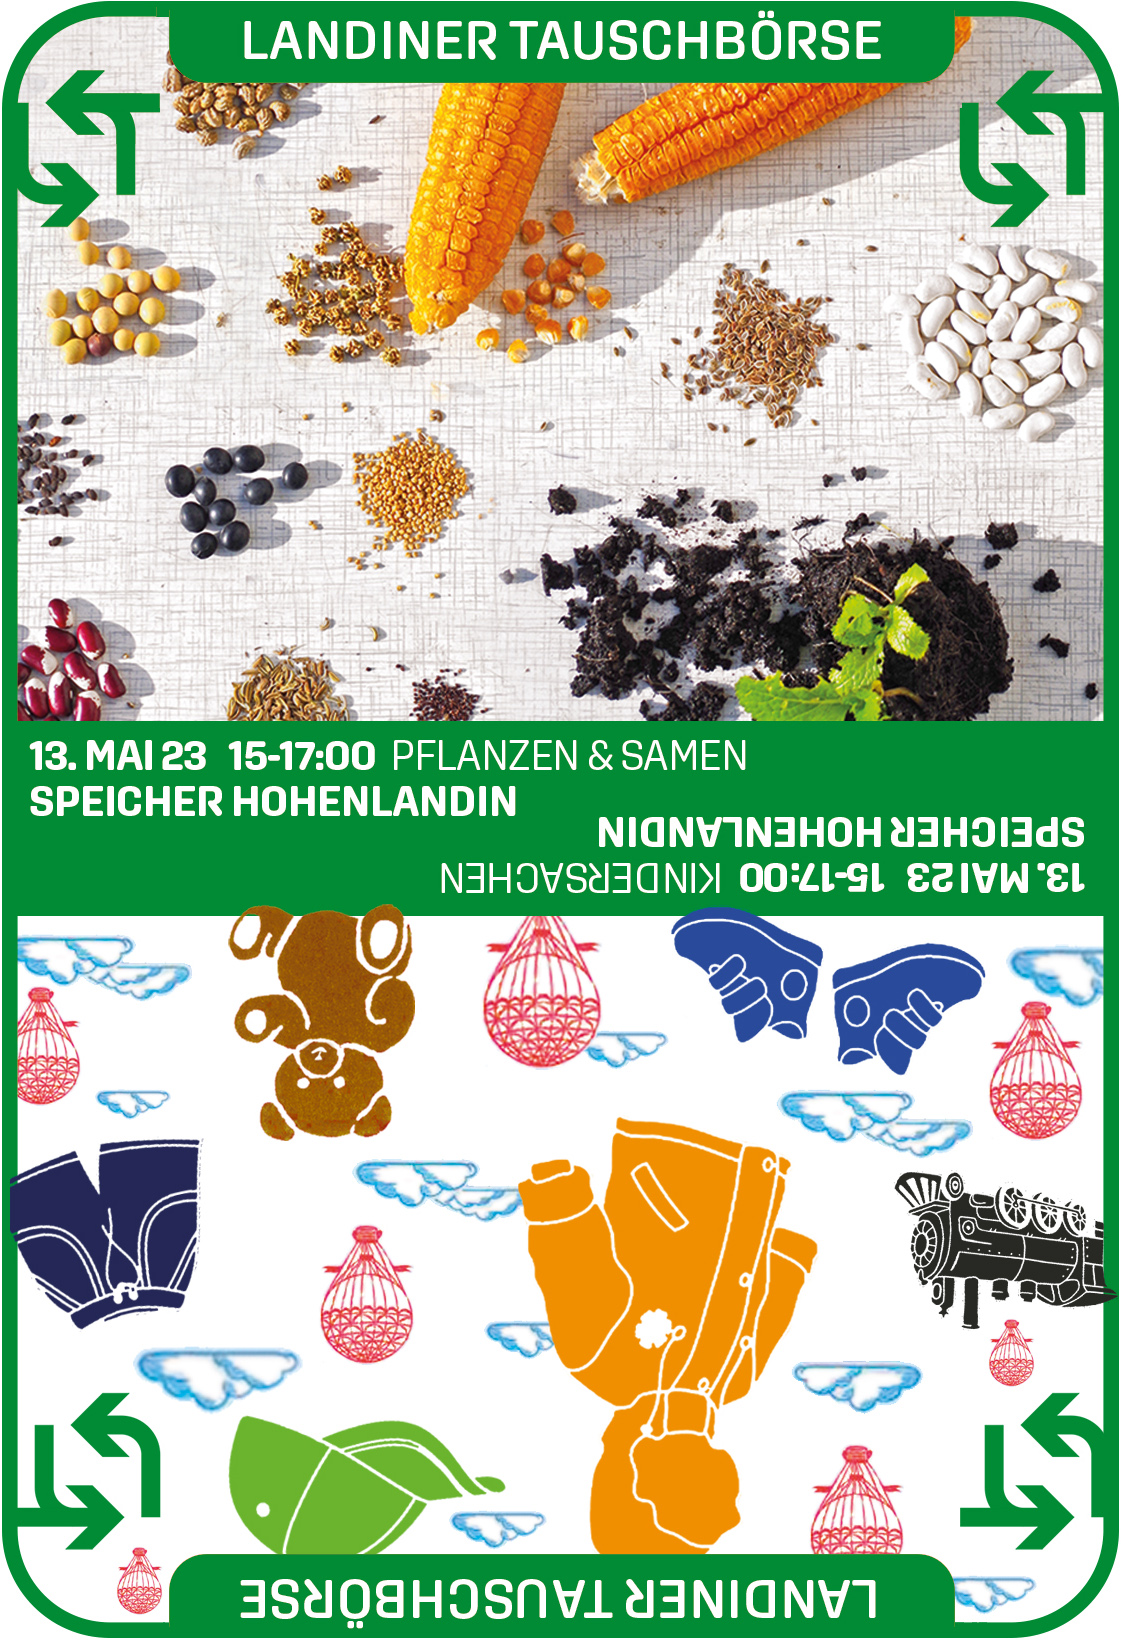 Plakat mit Text, Foto von Samen und Pflanzen und Grafiken von Kinderspielsachen, Bekleidung, Wolken und Ballons